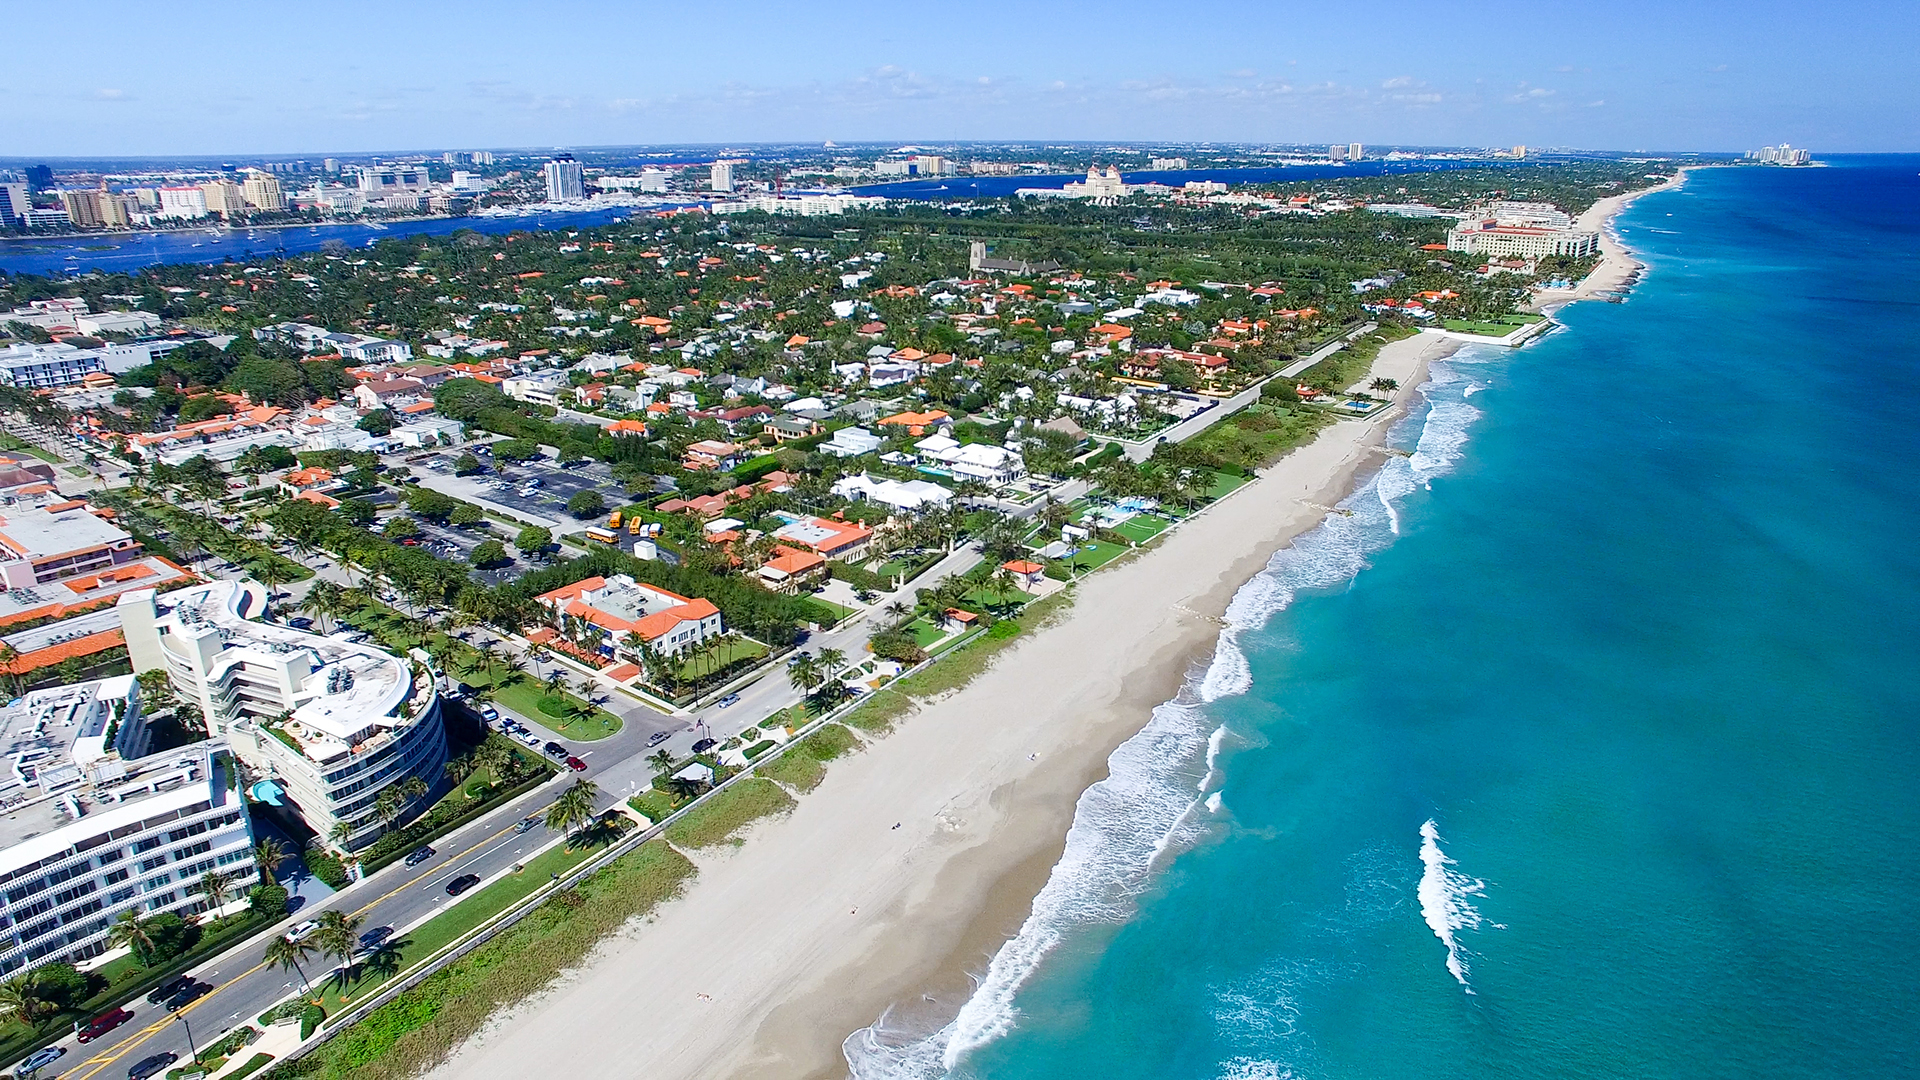 Este destino tiene para disfrutar 72 kilómetros de playas de arenas blancas (Shutterstock)